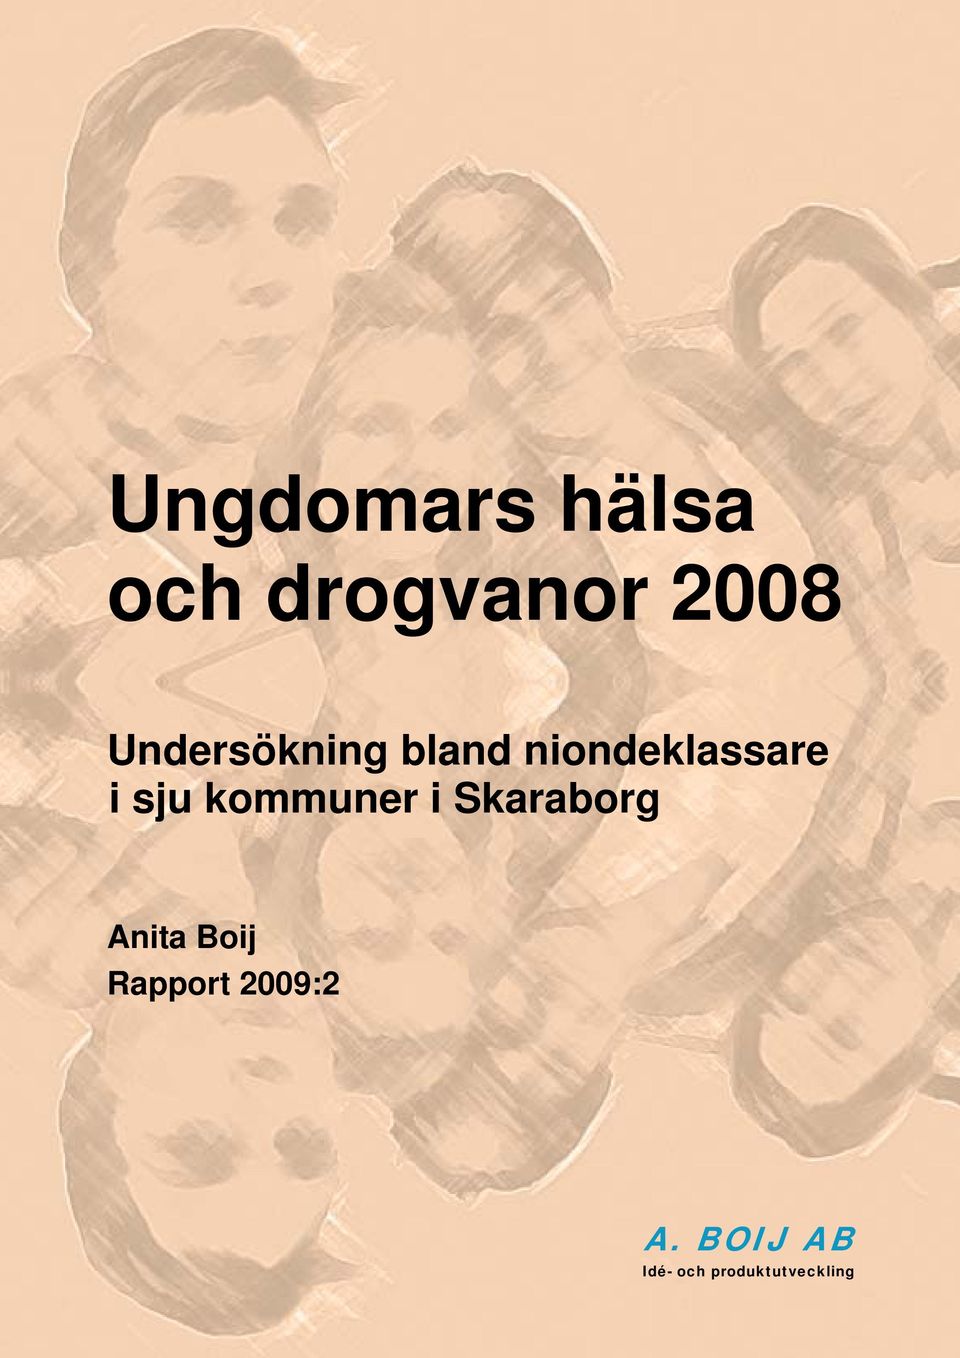 sju kommuner i Skaraborg Anita Boij